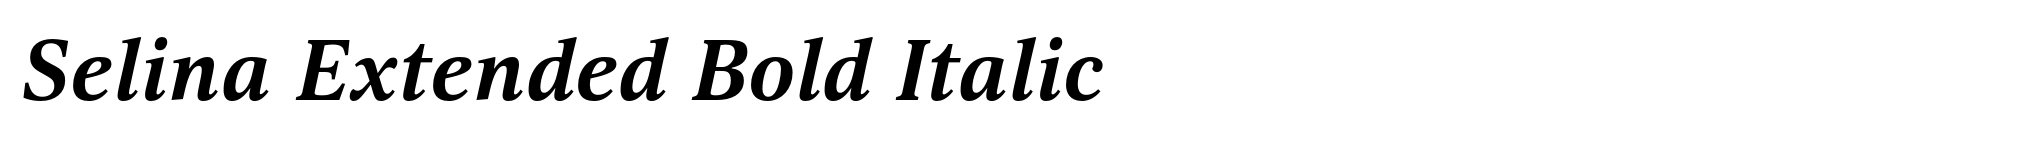 Selina Extended Bold Italic image